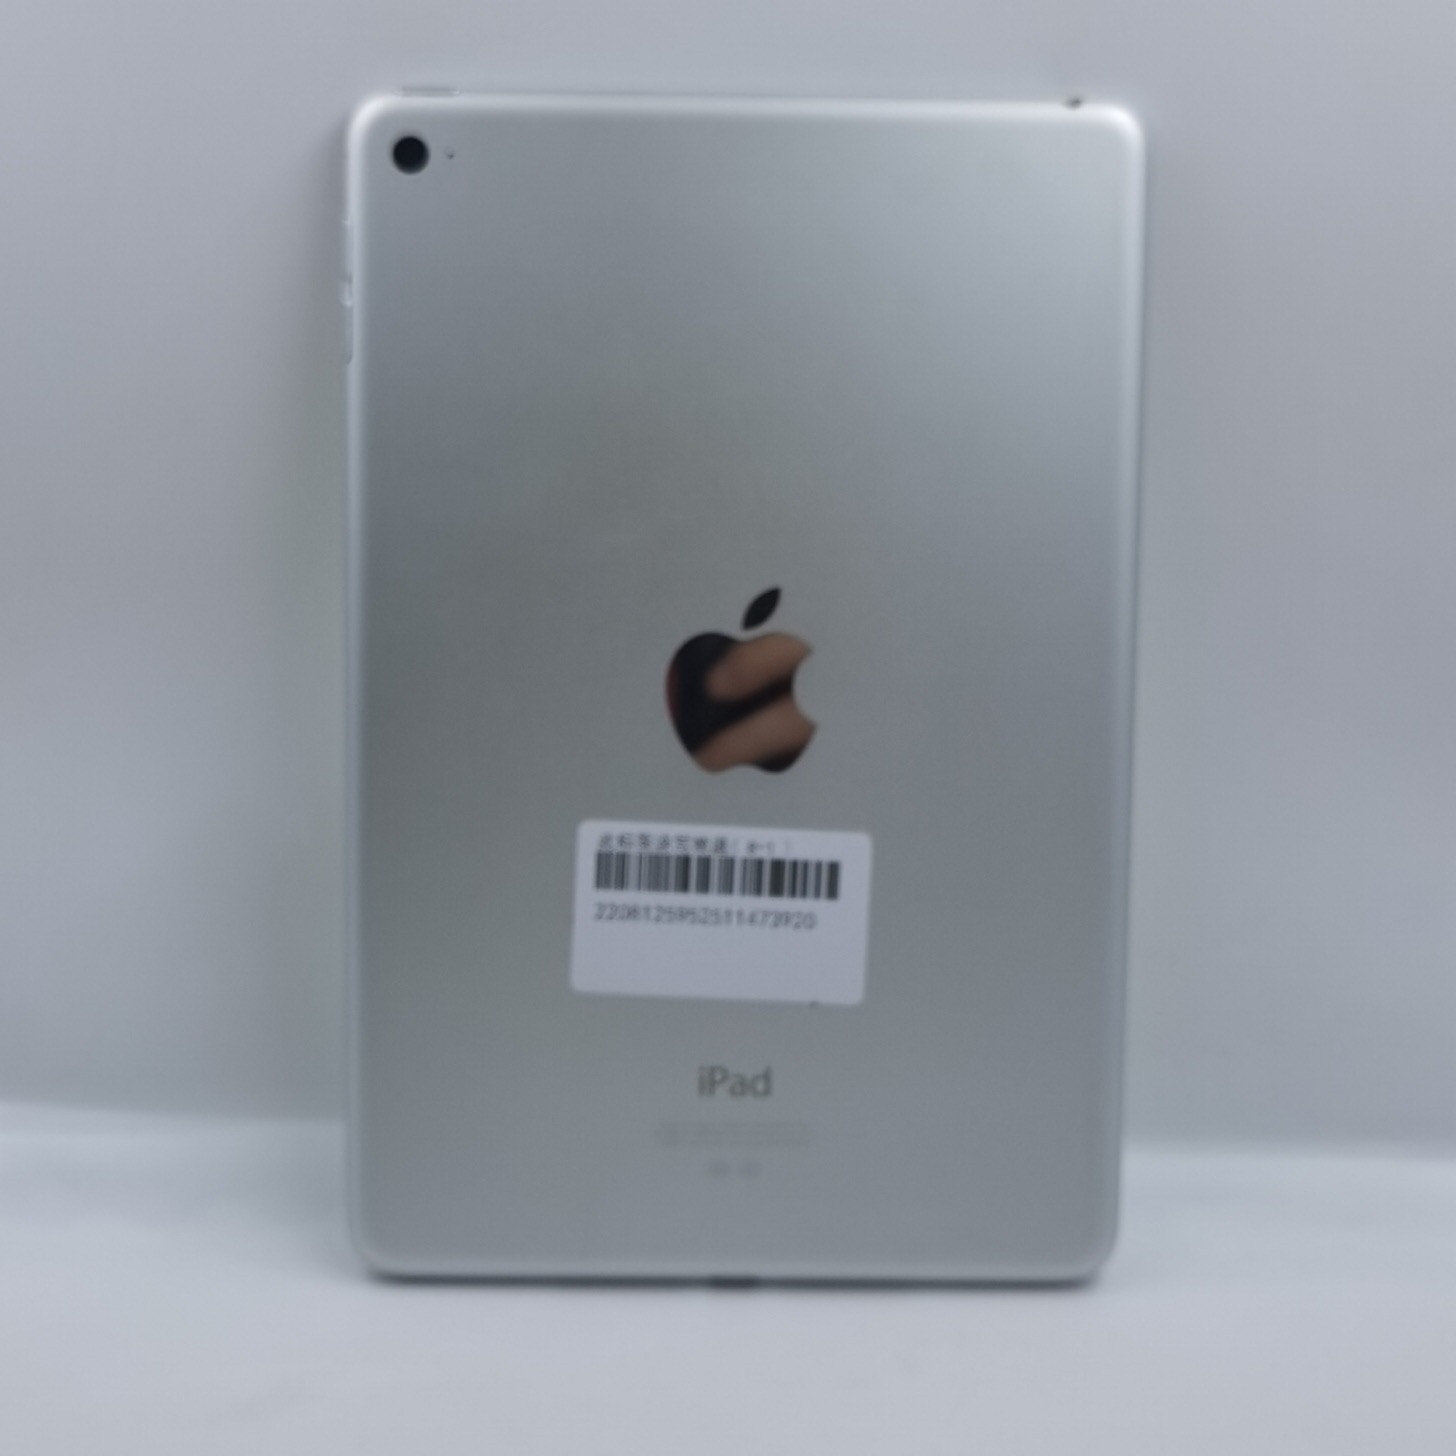 苹果【iPad mini 4】WIFI版 银色 128G 国行 8成新 